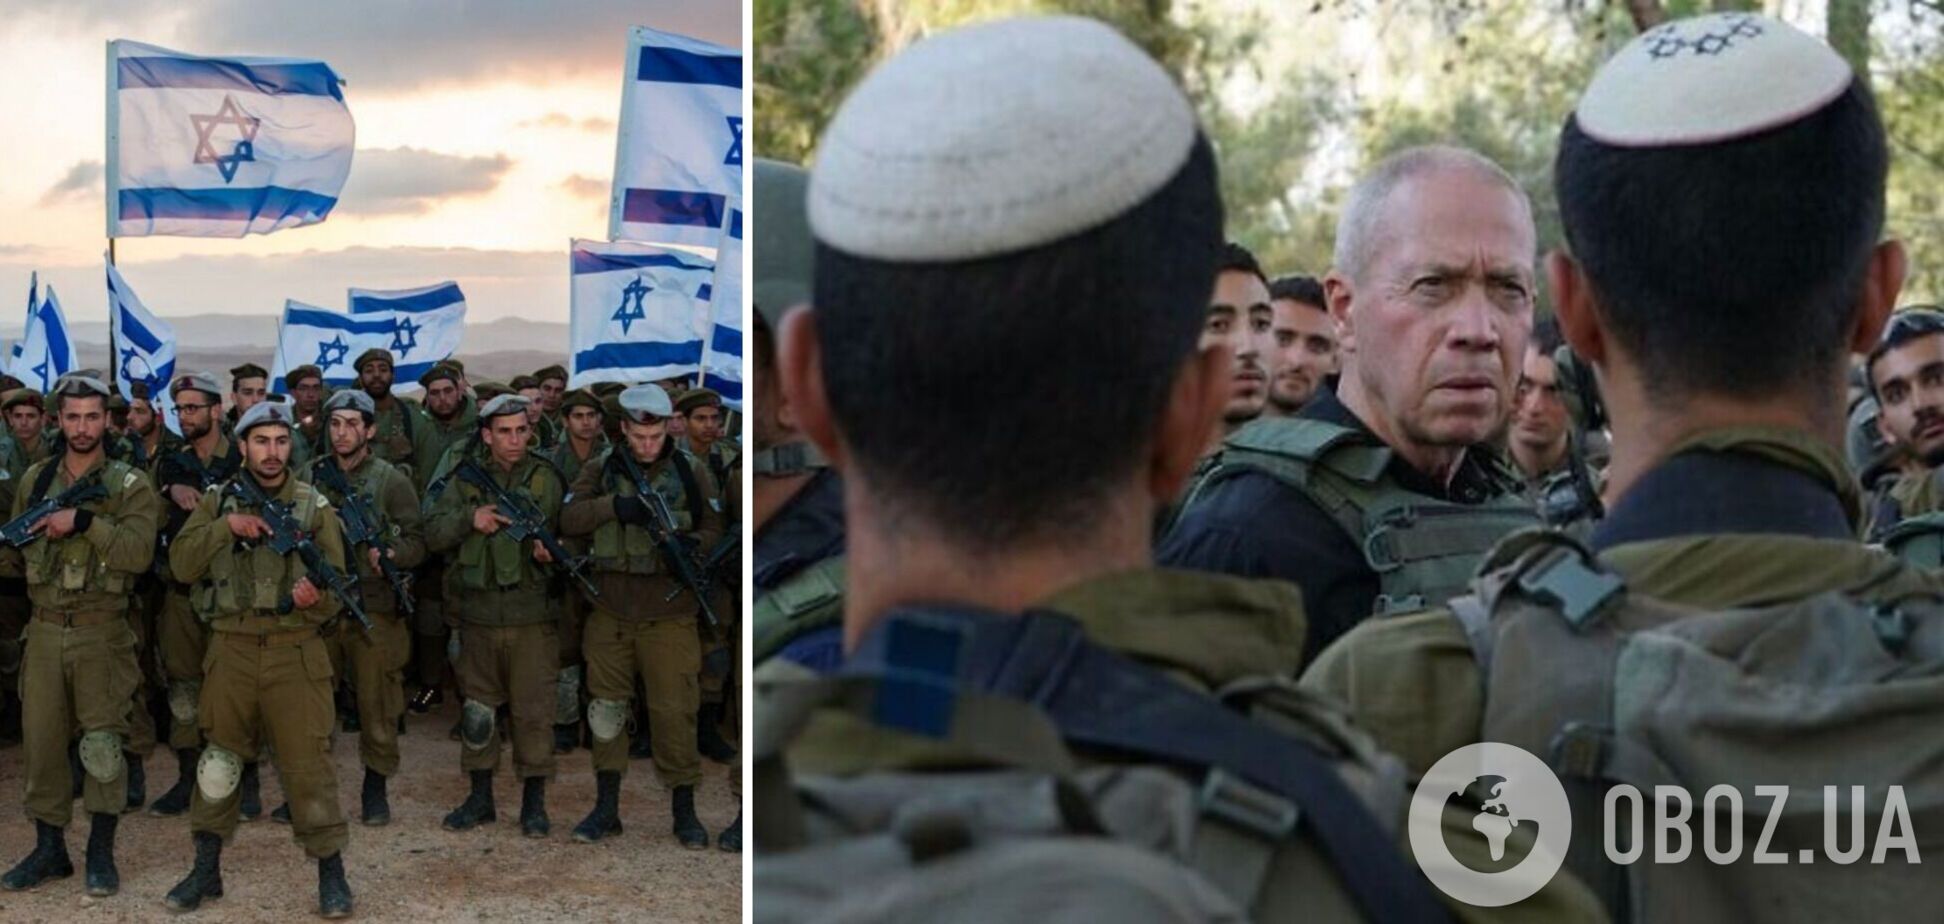  Ізраїль переходить до повного наступу на Газу: міністр оборони Галант заявив, що назад вороття не буде